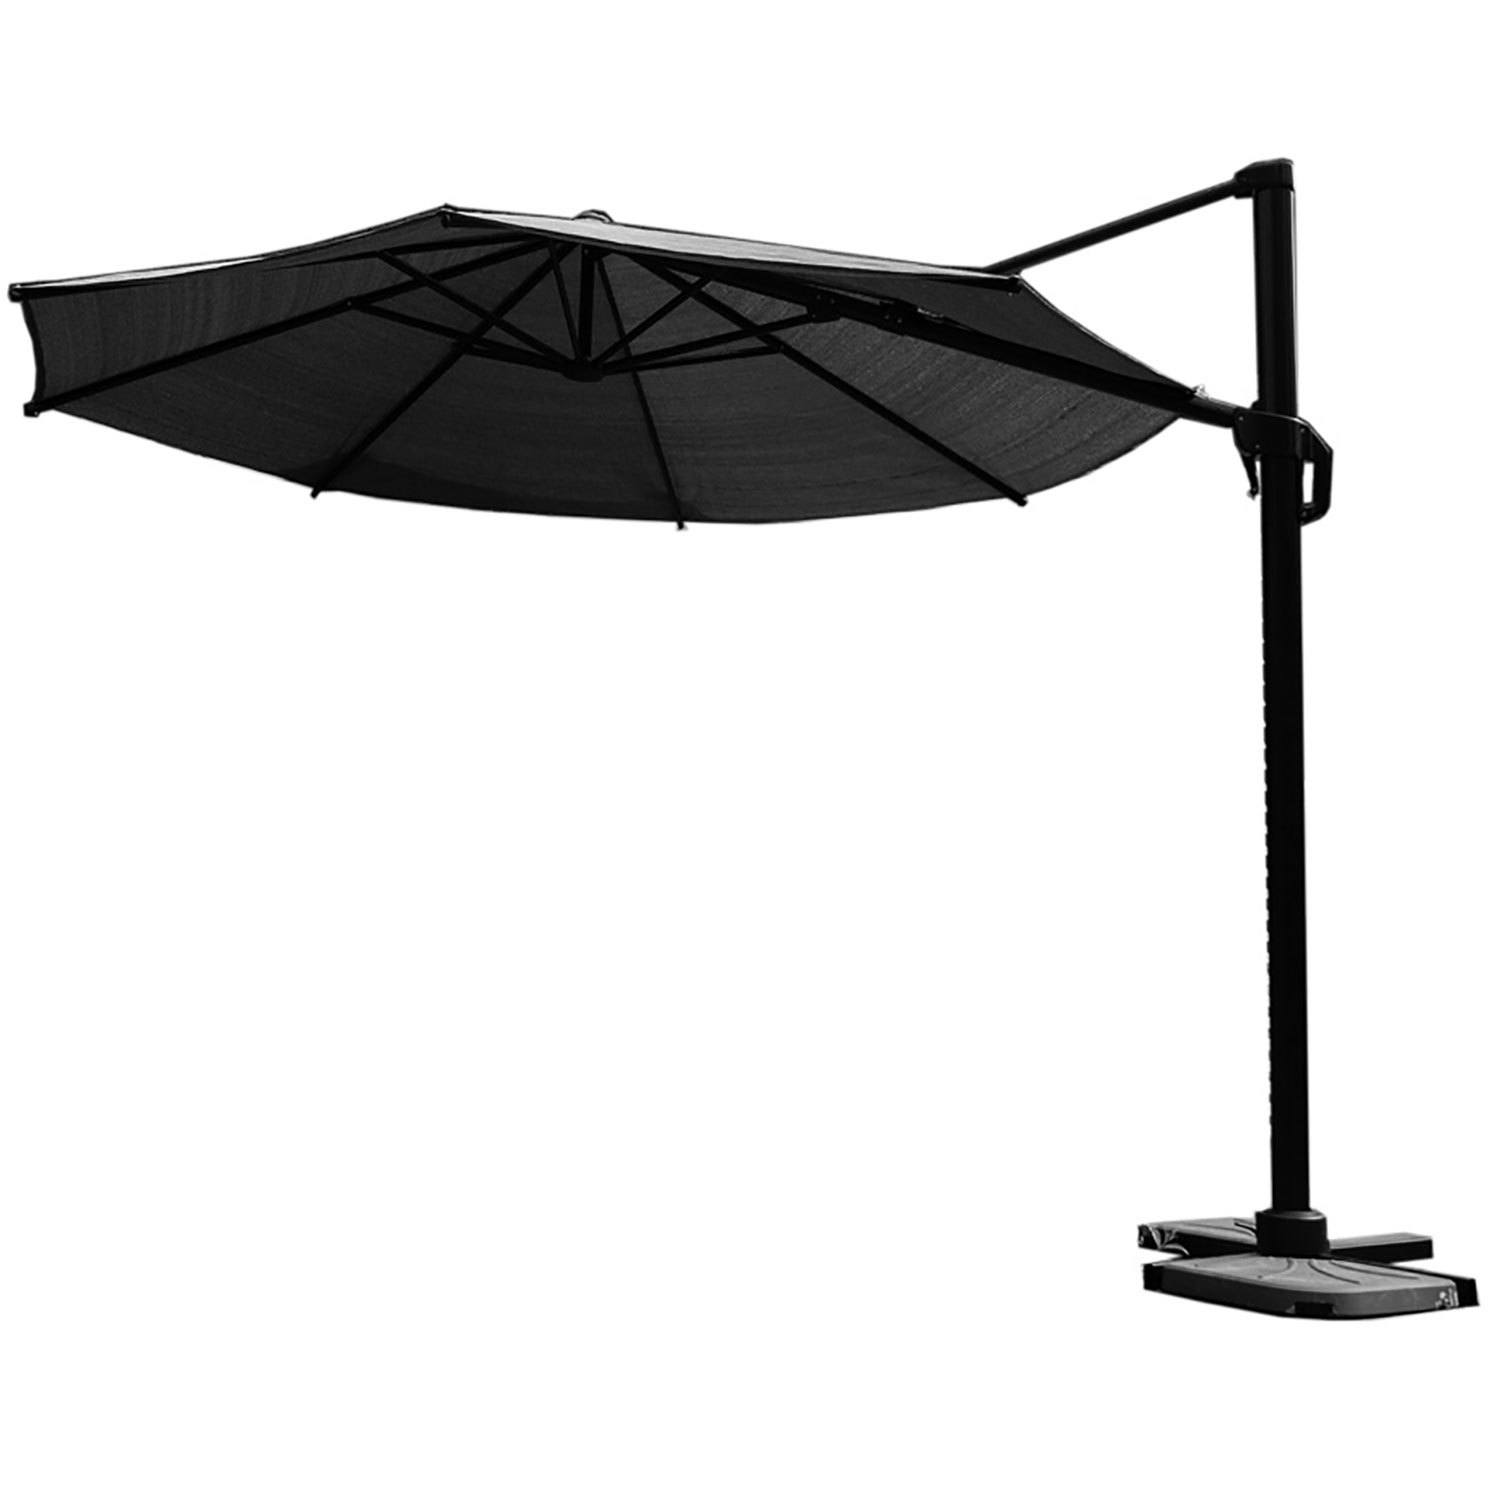 Coolfit frihängande parasoll 350cm anthracite